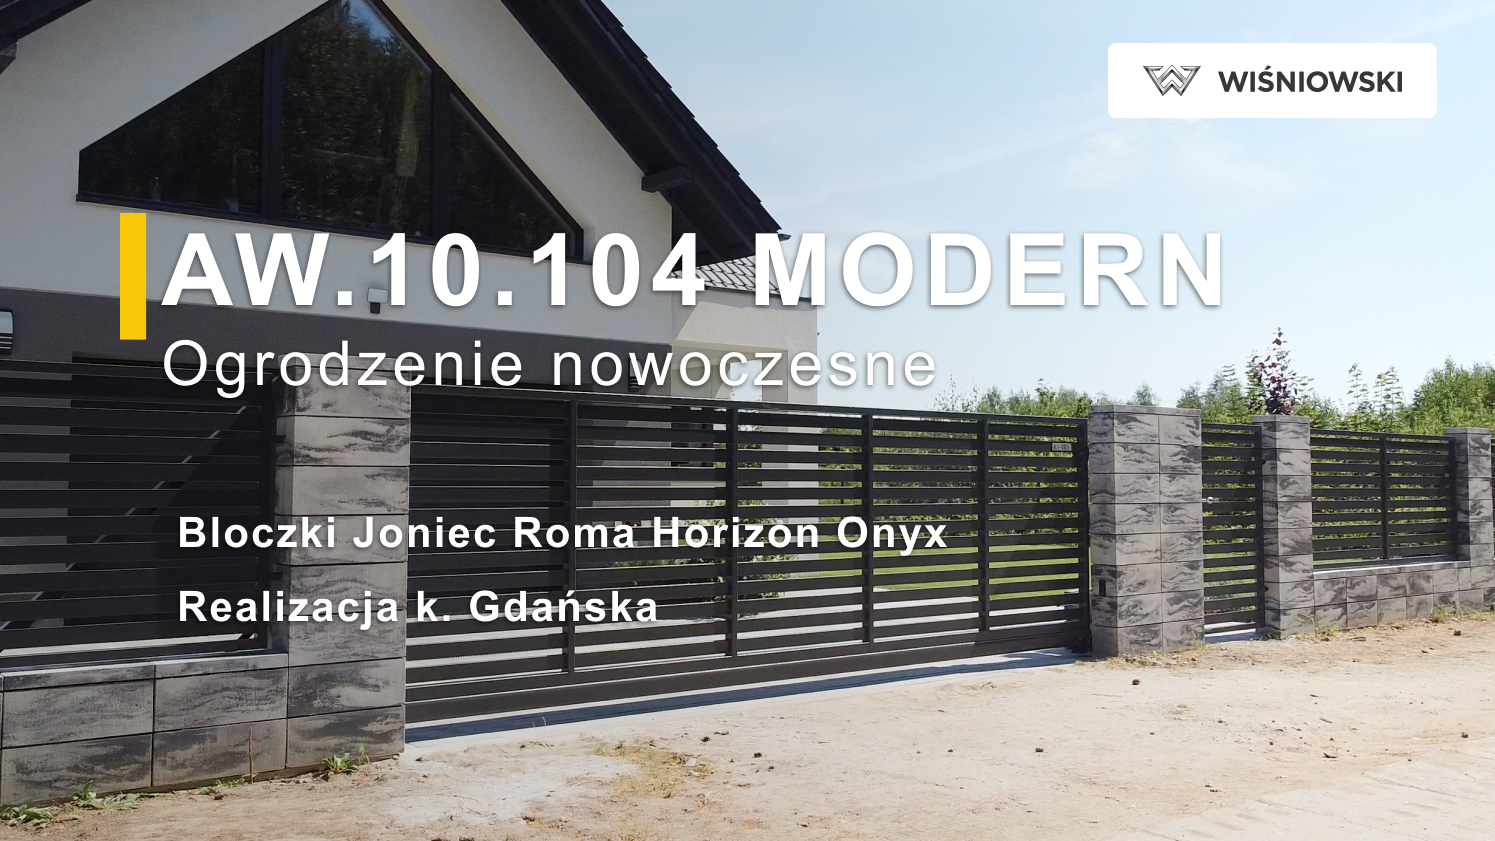 Ogrodzenie nowoczesne Wiśniowski AW.10.104, bloczki Joniec Roma Horizon Onyx k. Gdańska VIDEO